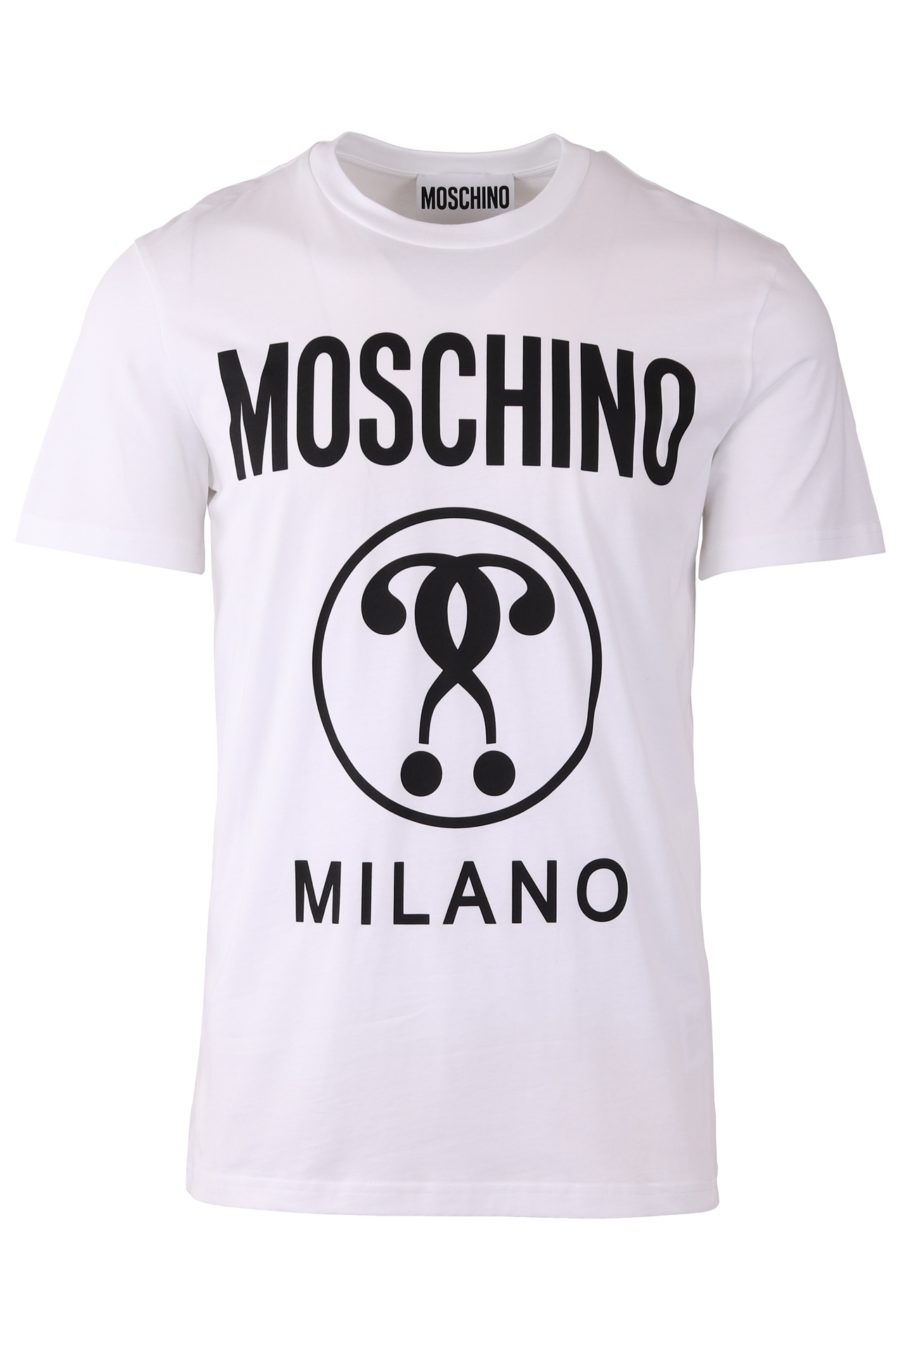 Camiseta Moschino Couture blanca regular con logo doble pregunta - 5283ced6179d5abe89880b52e121c9f7140d53e4